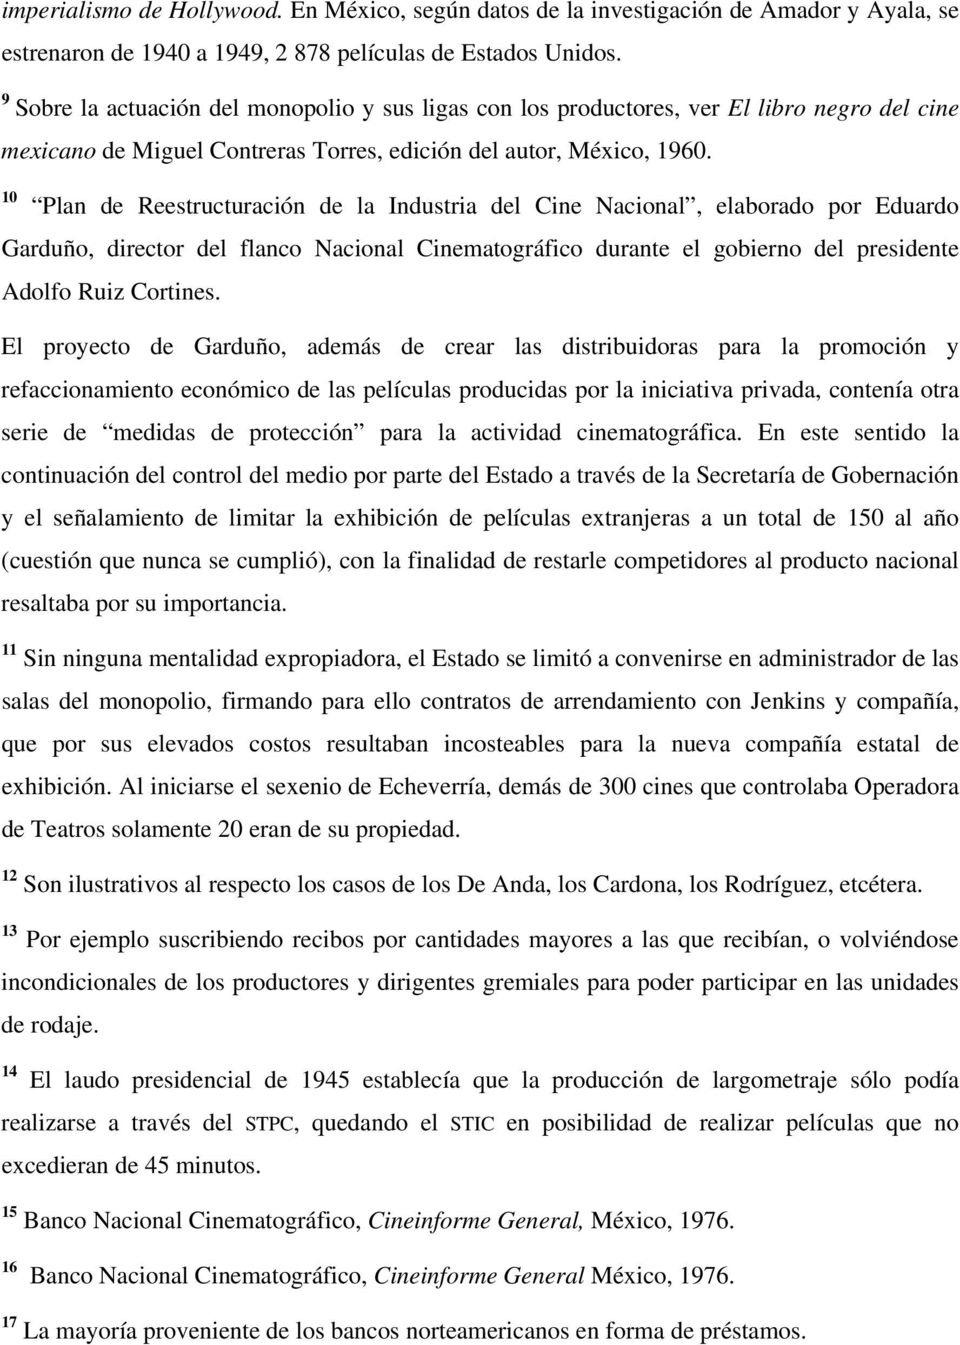 10 Plan de Reestructuración de la Industria del Cine Nacional, elaborado por Eduardo Garduño, director del flanco Nacional Cinematográfico durante el gobierno del presidente Adolfo Ruiz Cortines.